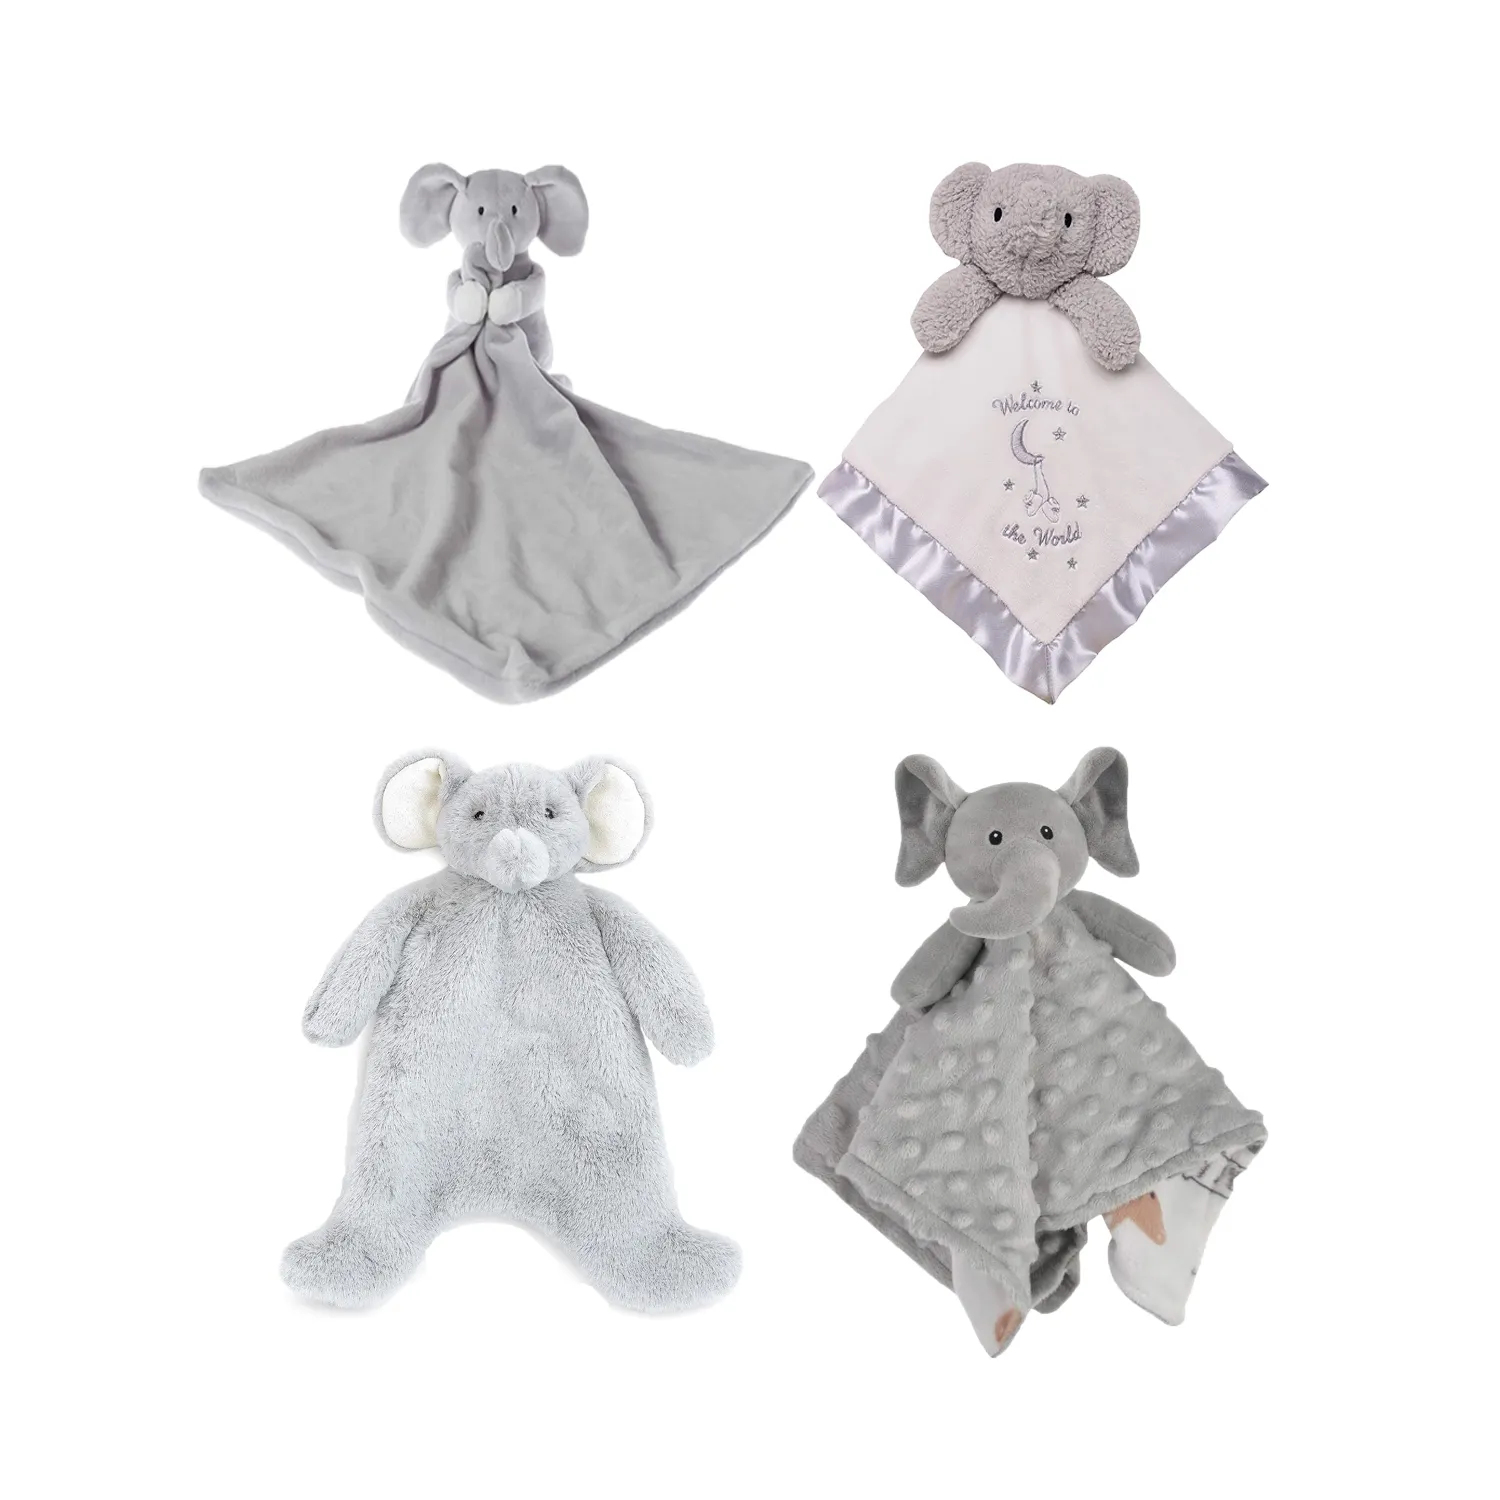 Özel Premium fil Lovey güvenlik örtüsü peluş gri fil oyuncak bebek kızlar için Milestone hediye seti kutusu mevcut yenidoğan